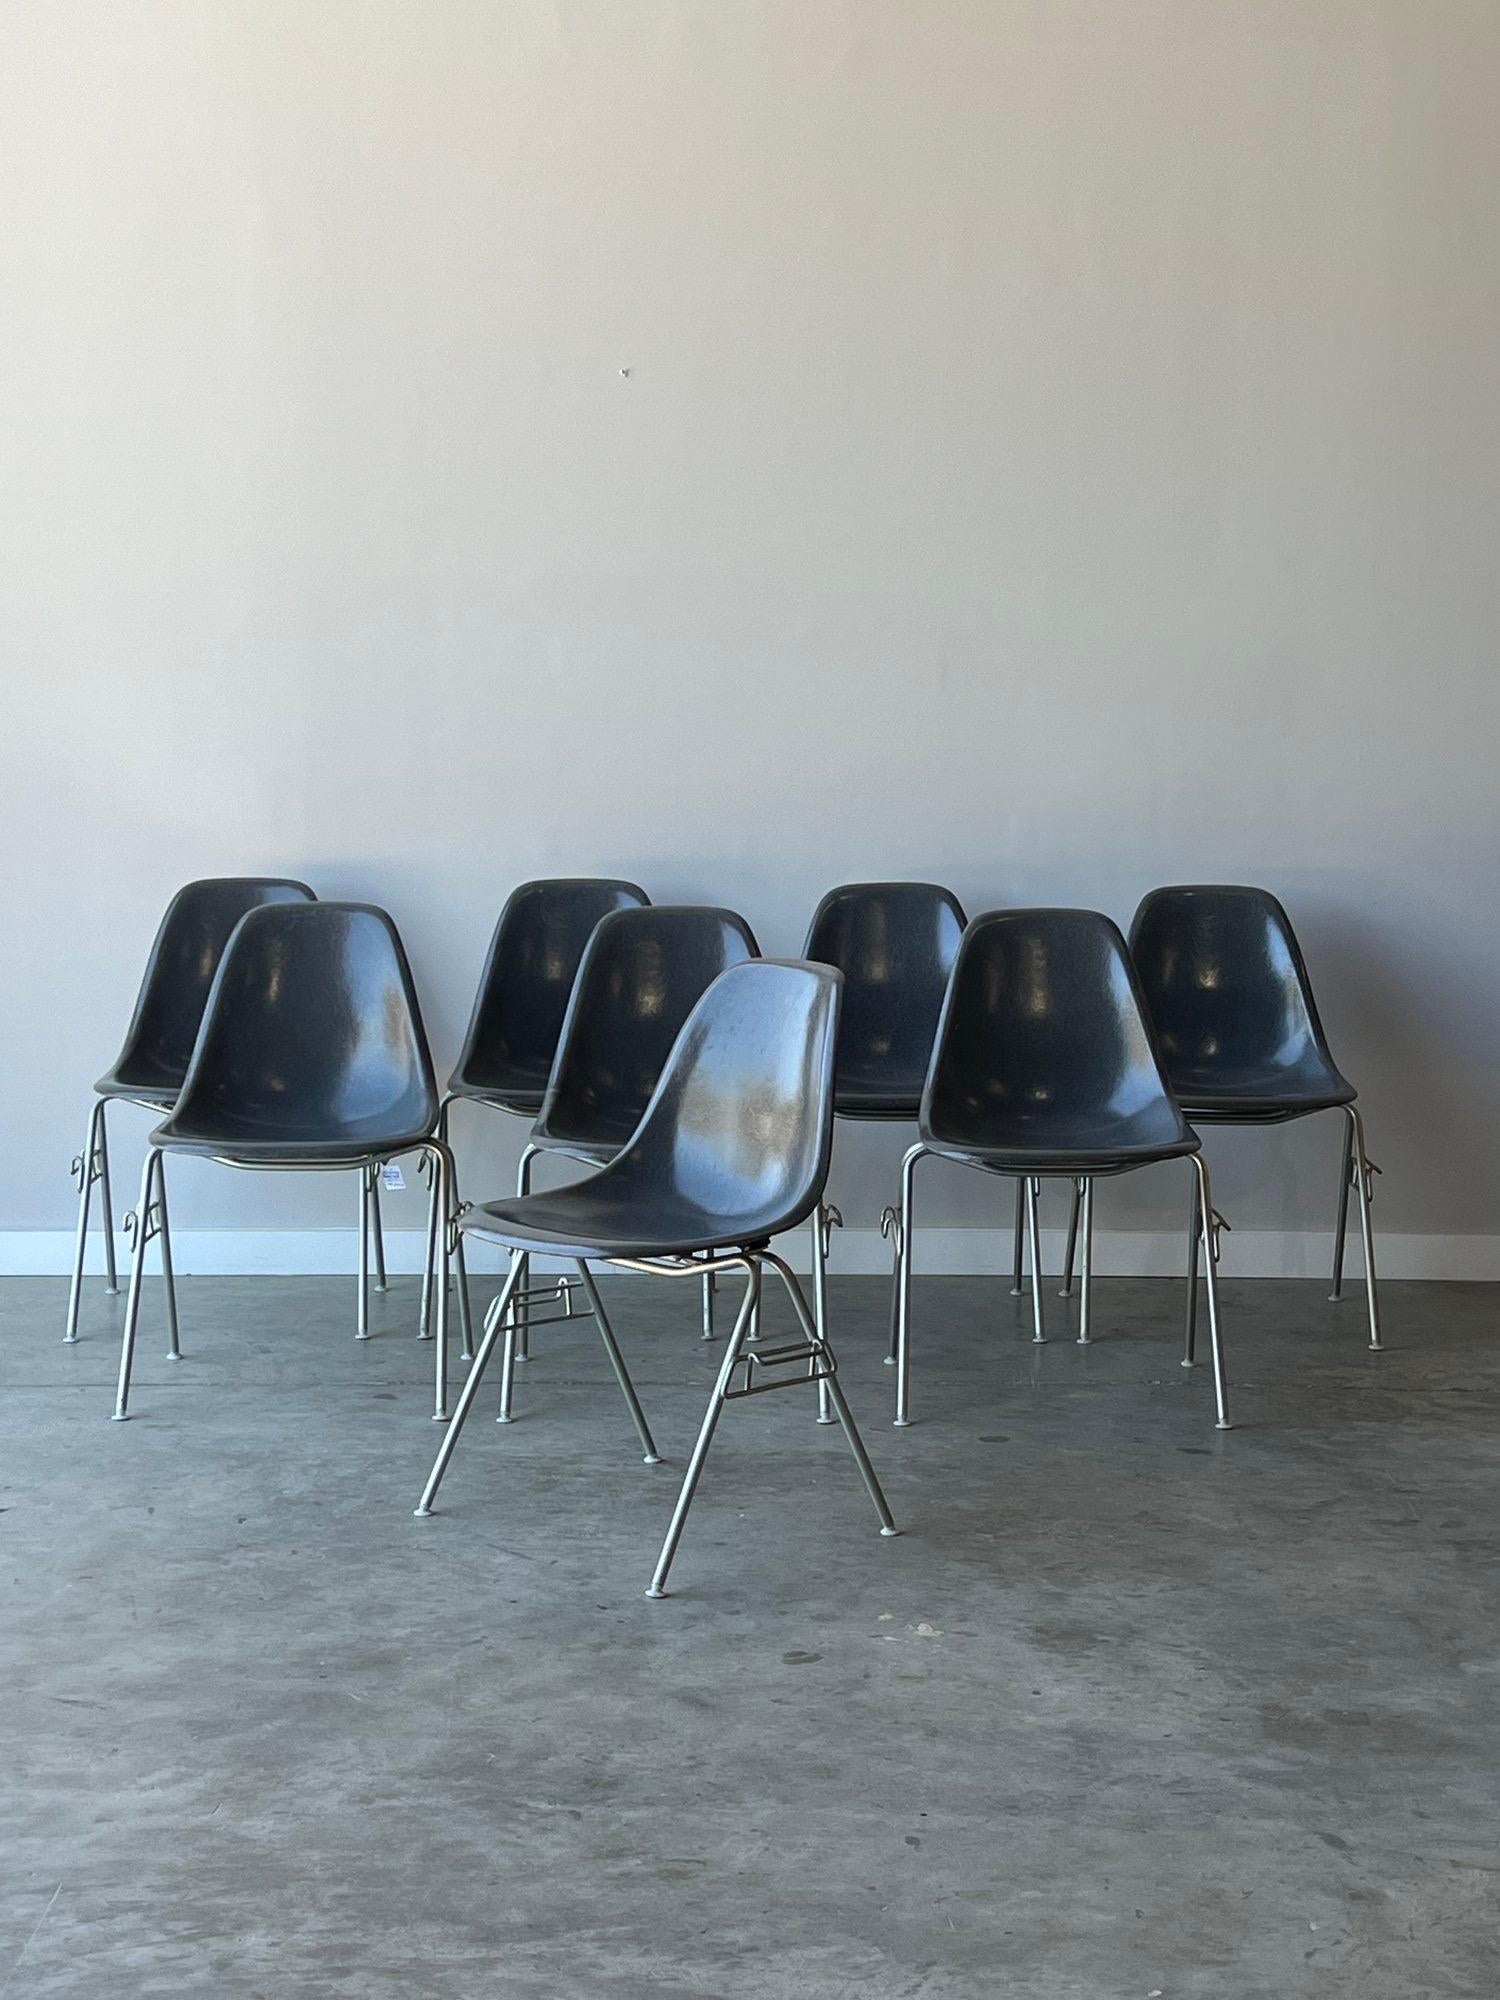 Nous avons le plaisir de vous proposer une superbe collection de 8 chaises empilables Herman Miller Eames DSS Mid Century Modern en elephant hide grey. Ces chaises sont dans un état vintage fantastique, sans éclats ni fissures. Patine d'âge mineure